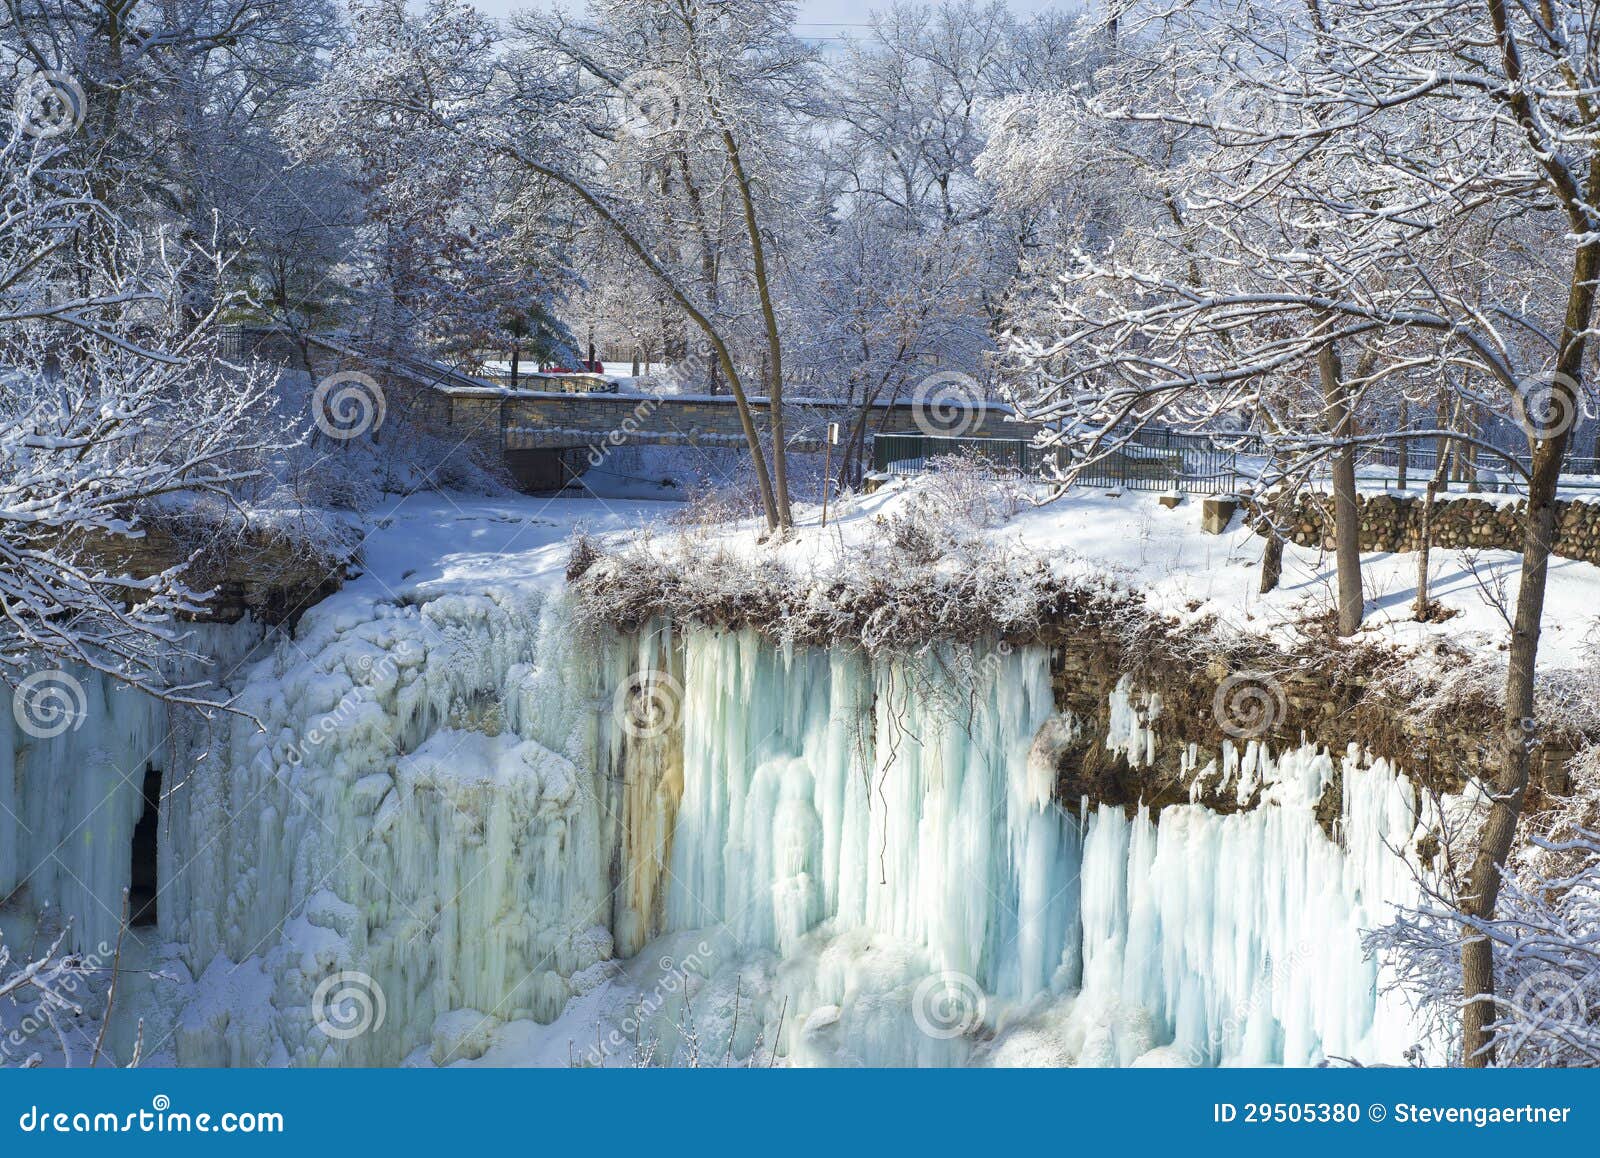 minnehaha falls, footbridge, winter